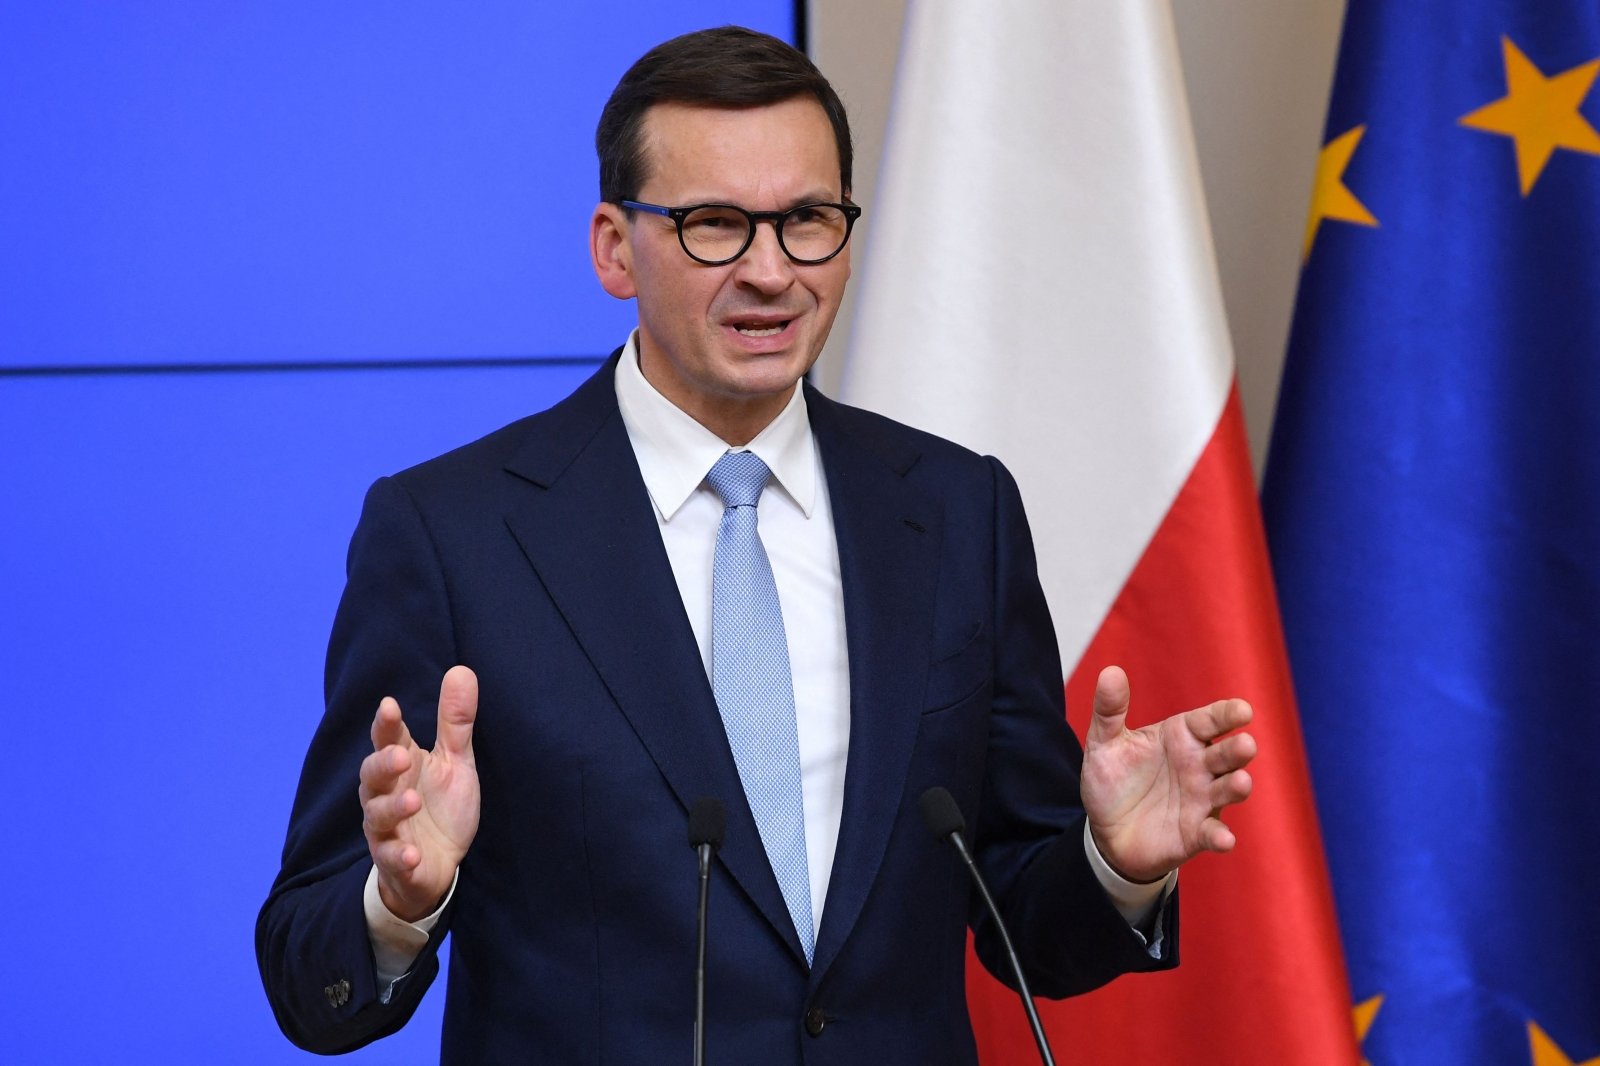 Polski premier mówi, że opiera się na decyzji Litwy, aby umożliwić działanie tajwańskiej misji